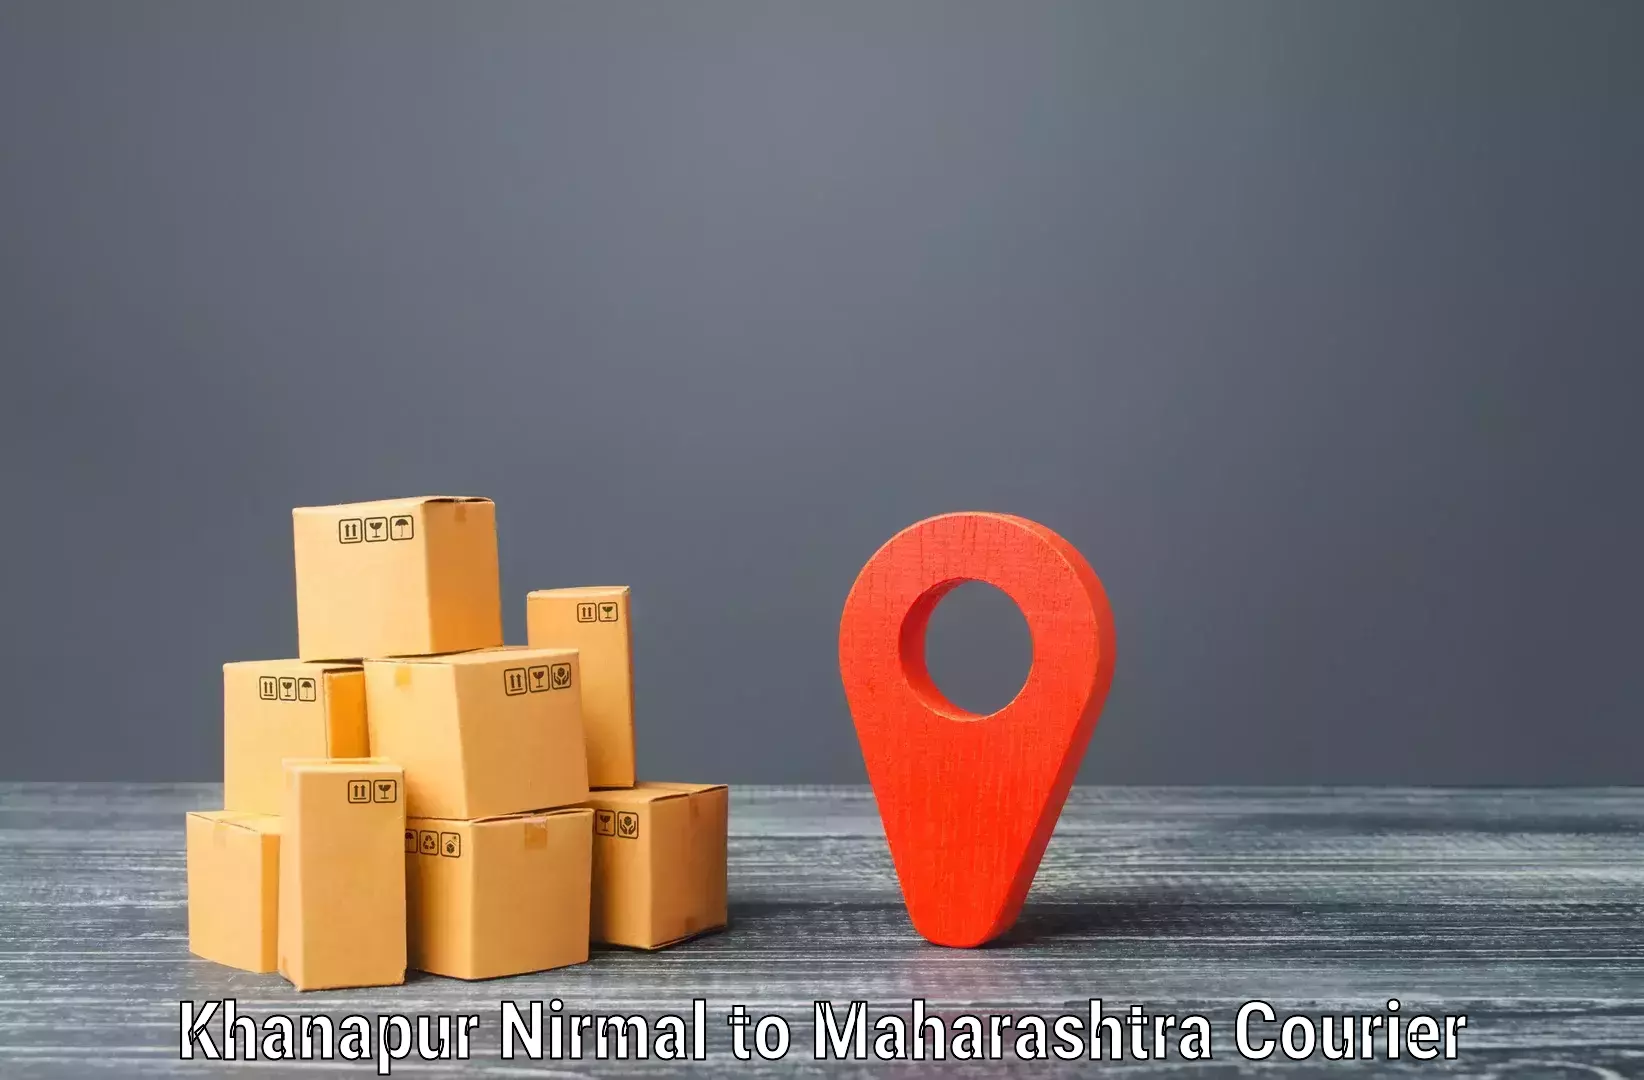 Reliable courier services Khanapur Nirmal to Kopargaon